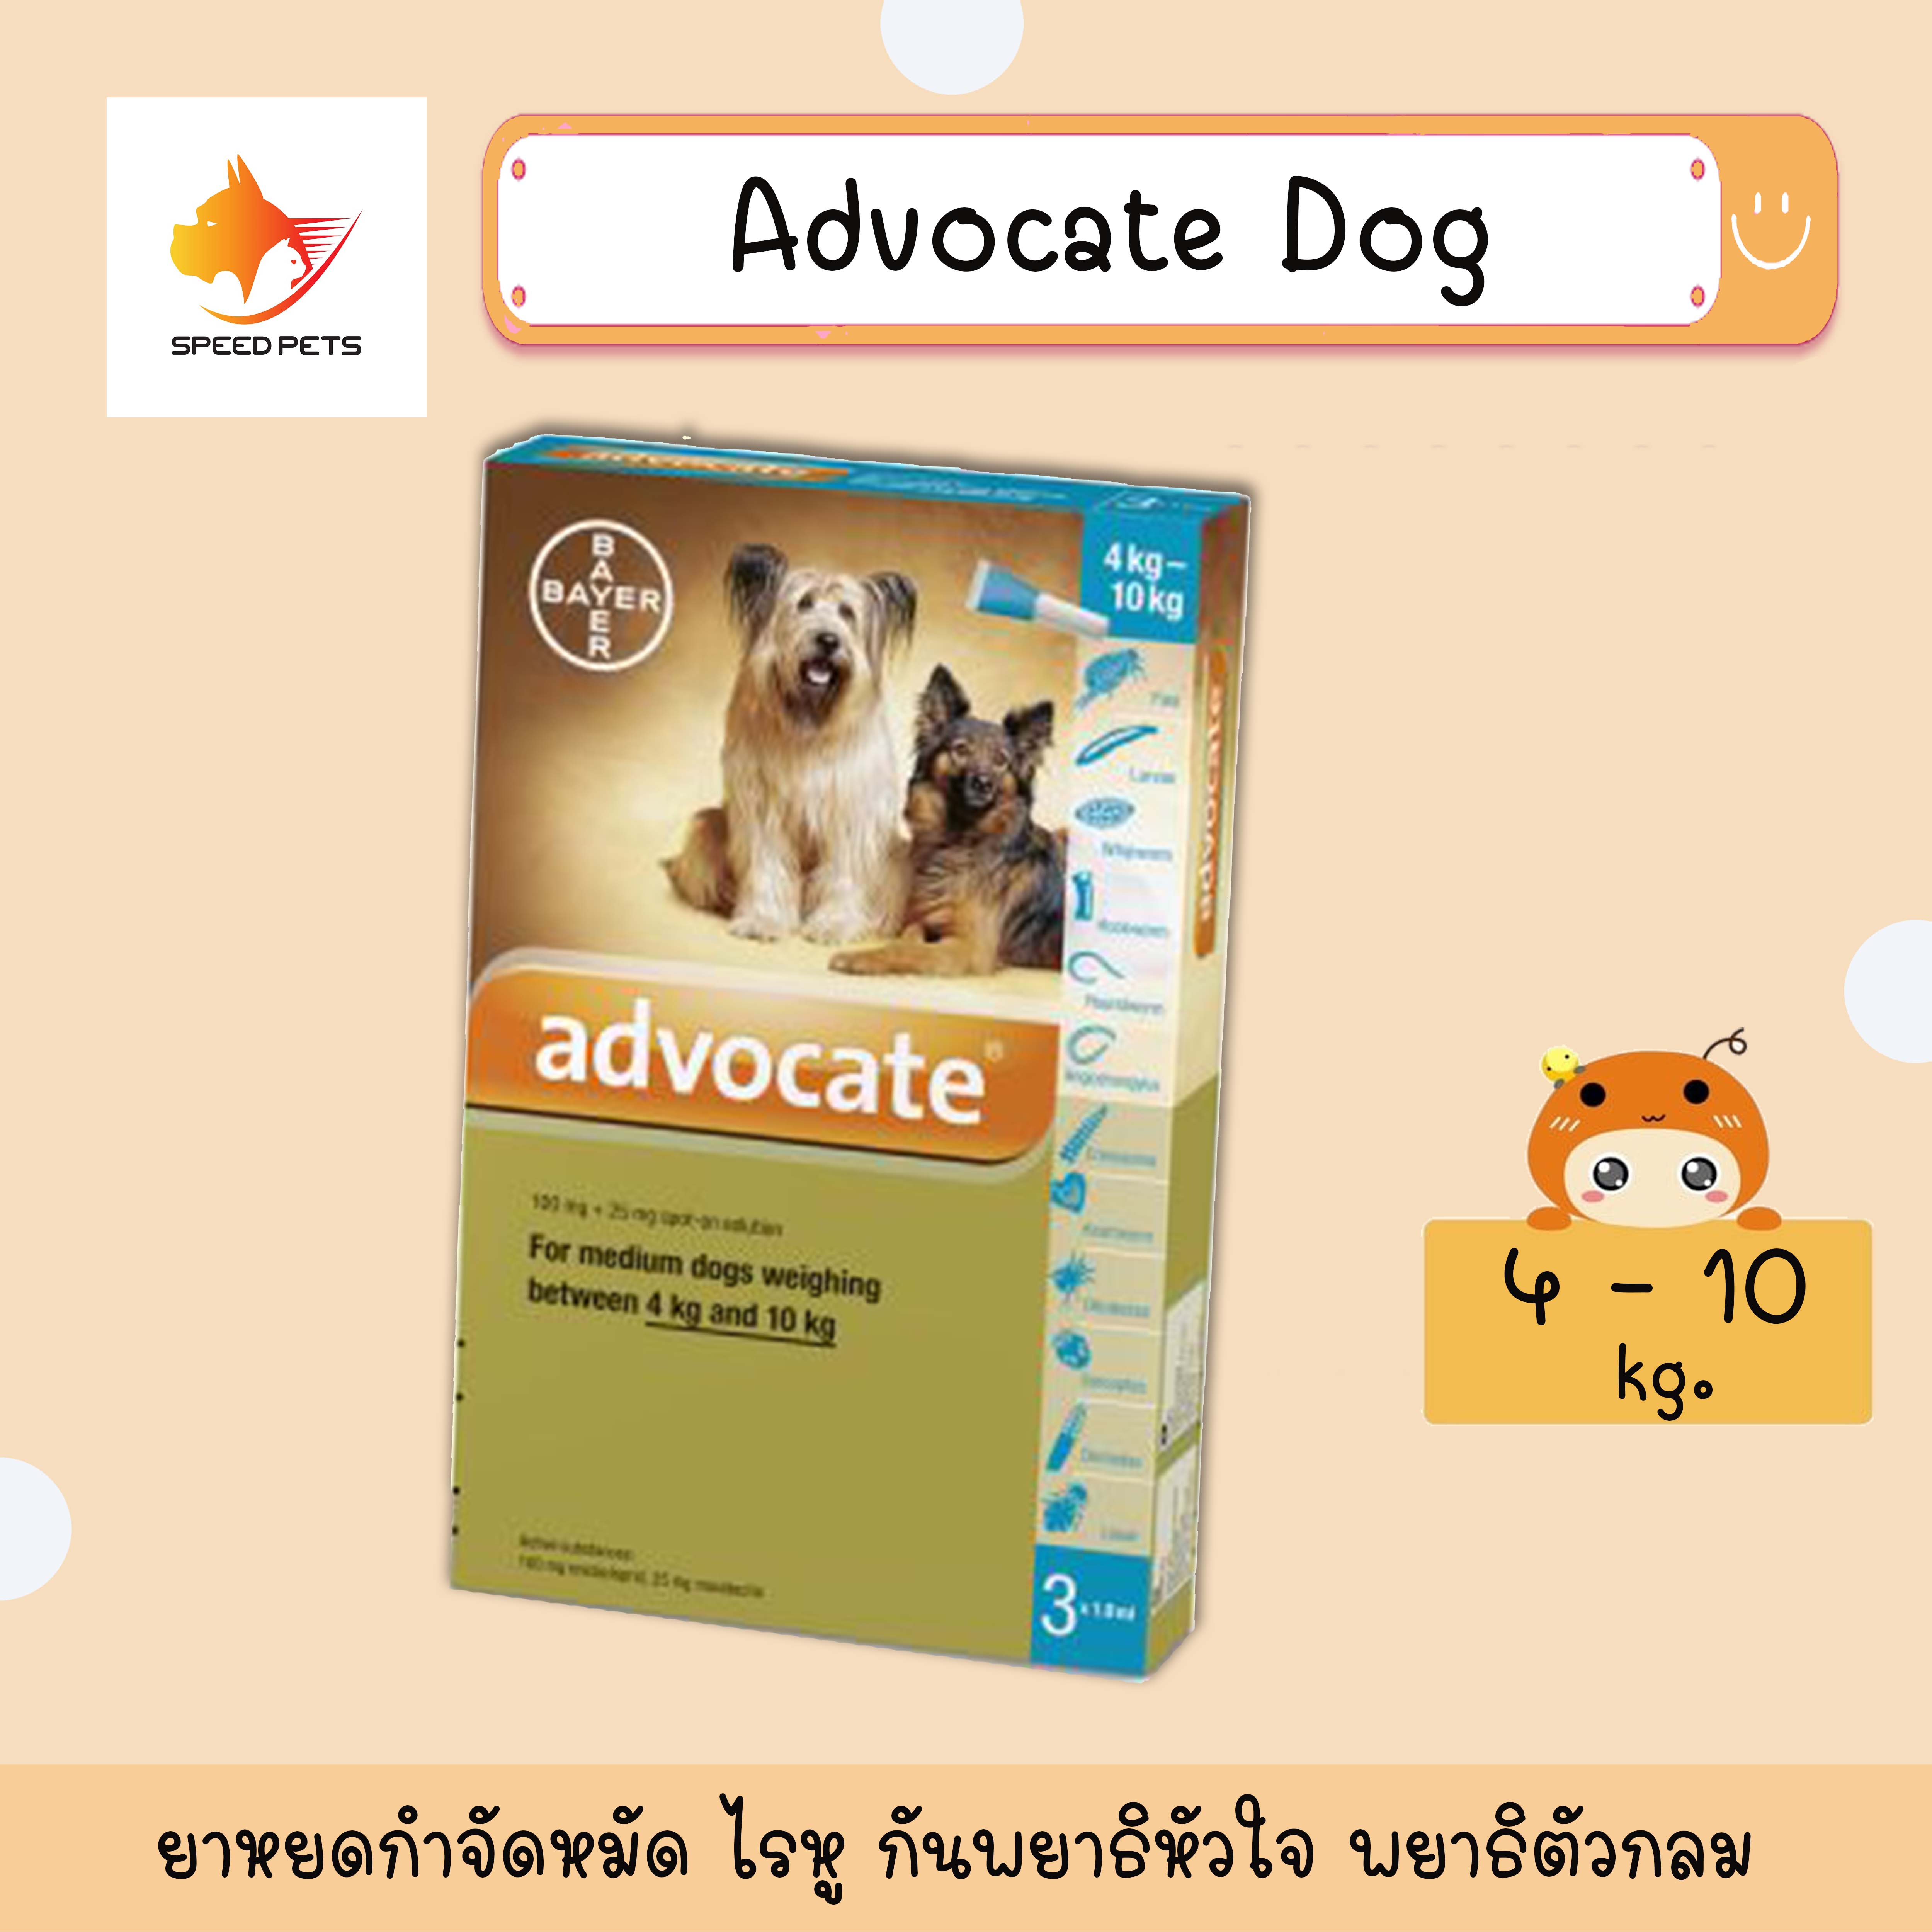 Advocate dog 4-10 kg. ( 3 tube ) แอทโวเคท สุนัข น้ำหนัก 4-10 กก. เห็บ หมัด ไรในหู 4-10กก.( 3 หลอด ) หมดอายุ 09/2021